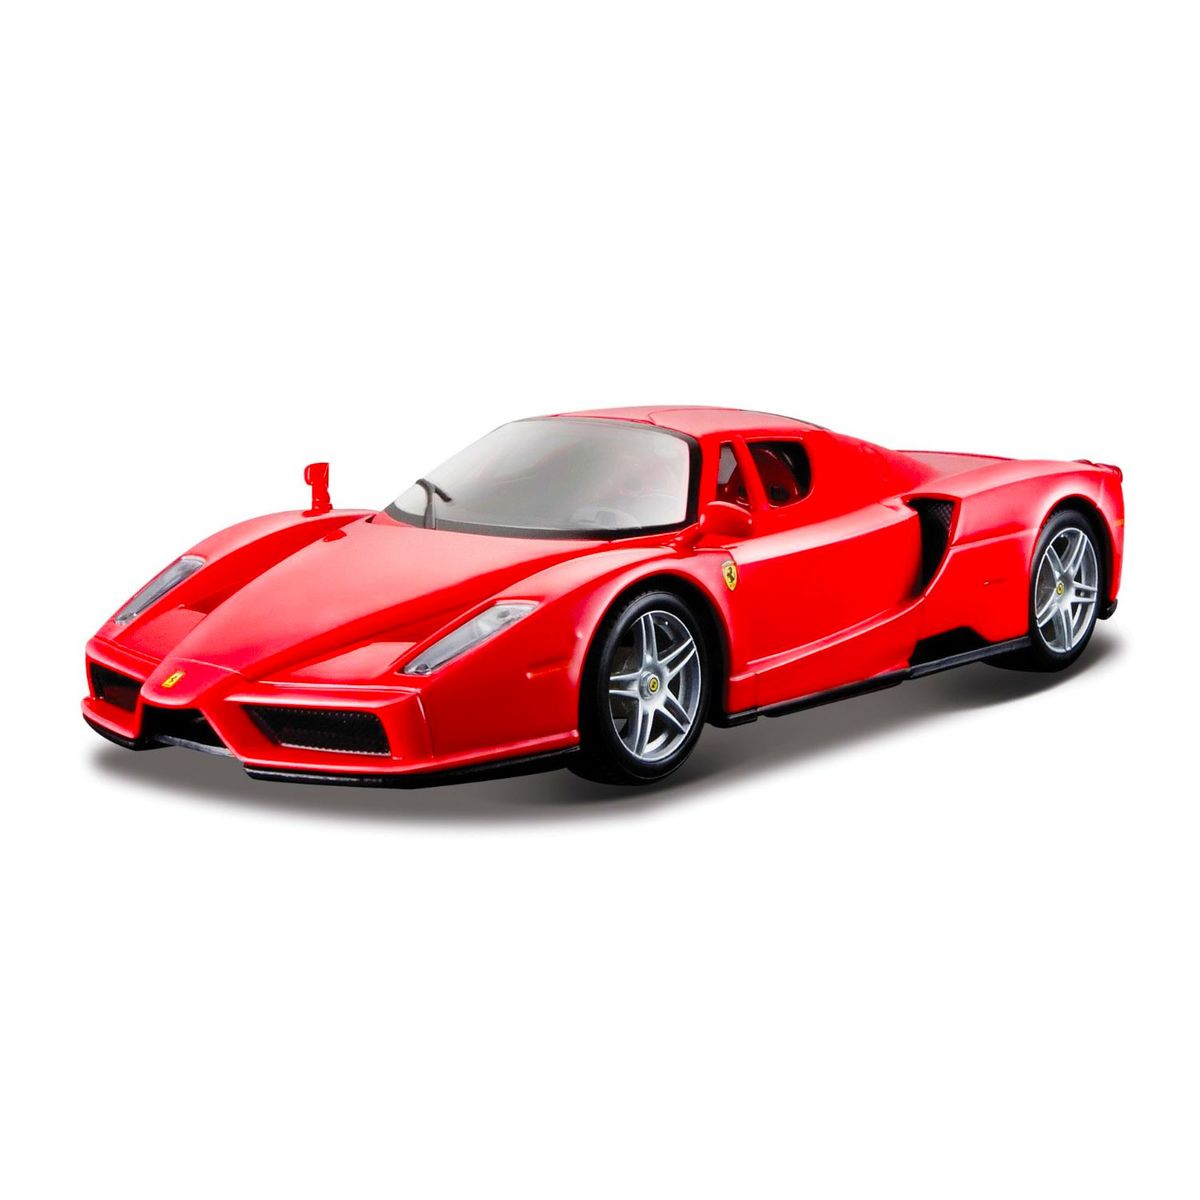 Ferrari Enzo Sport - 1/43ème en boite